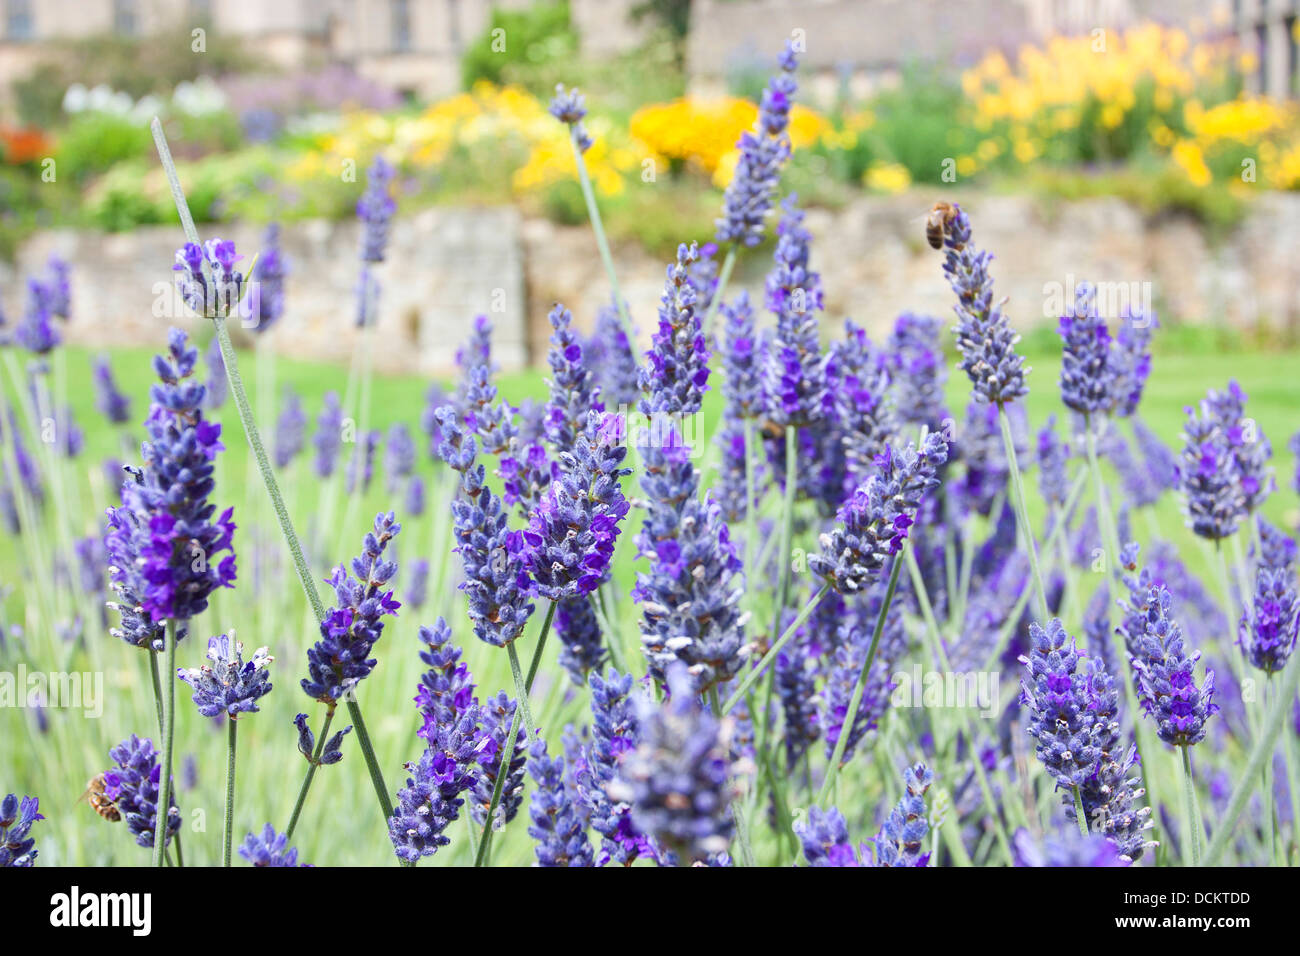 Typische englische Landschaftsgarten mit Lavendel-Busch im Vordergrund Stockfoto